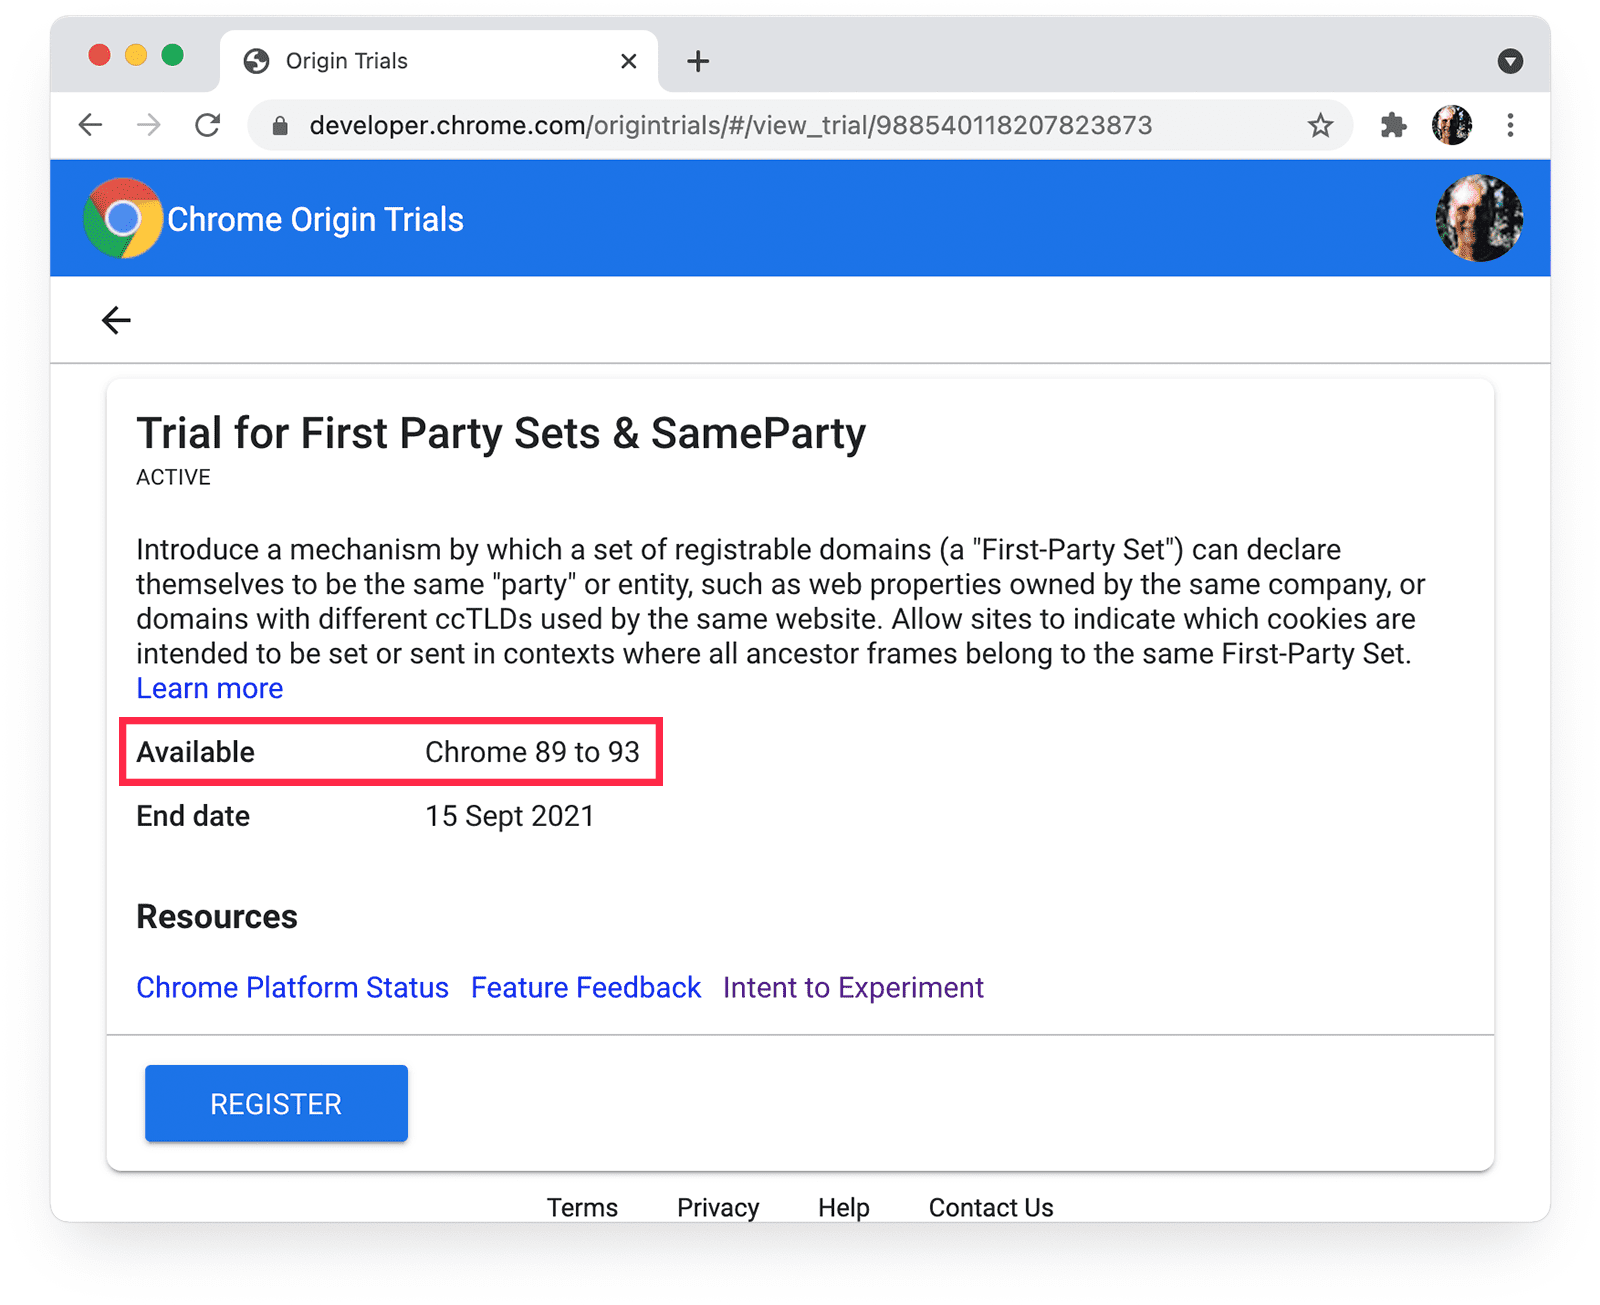 דף גרסאות המקור לניסיון ב-Chrome
לדומיינים של צד ראשון ול-SameParty, עם הדגשה של זמינות Chrome